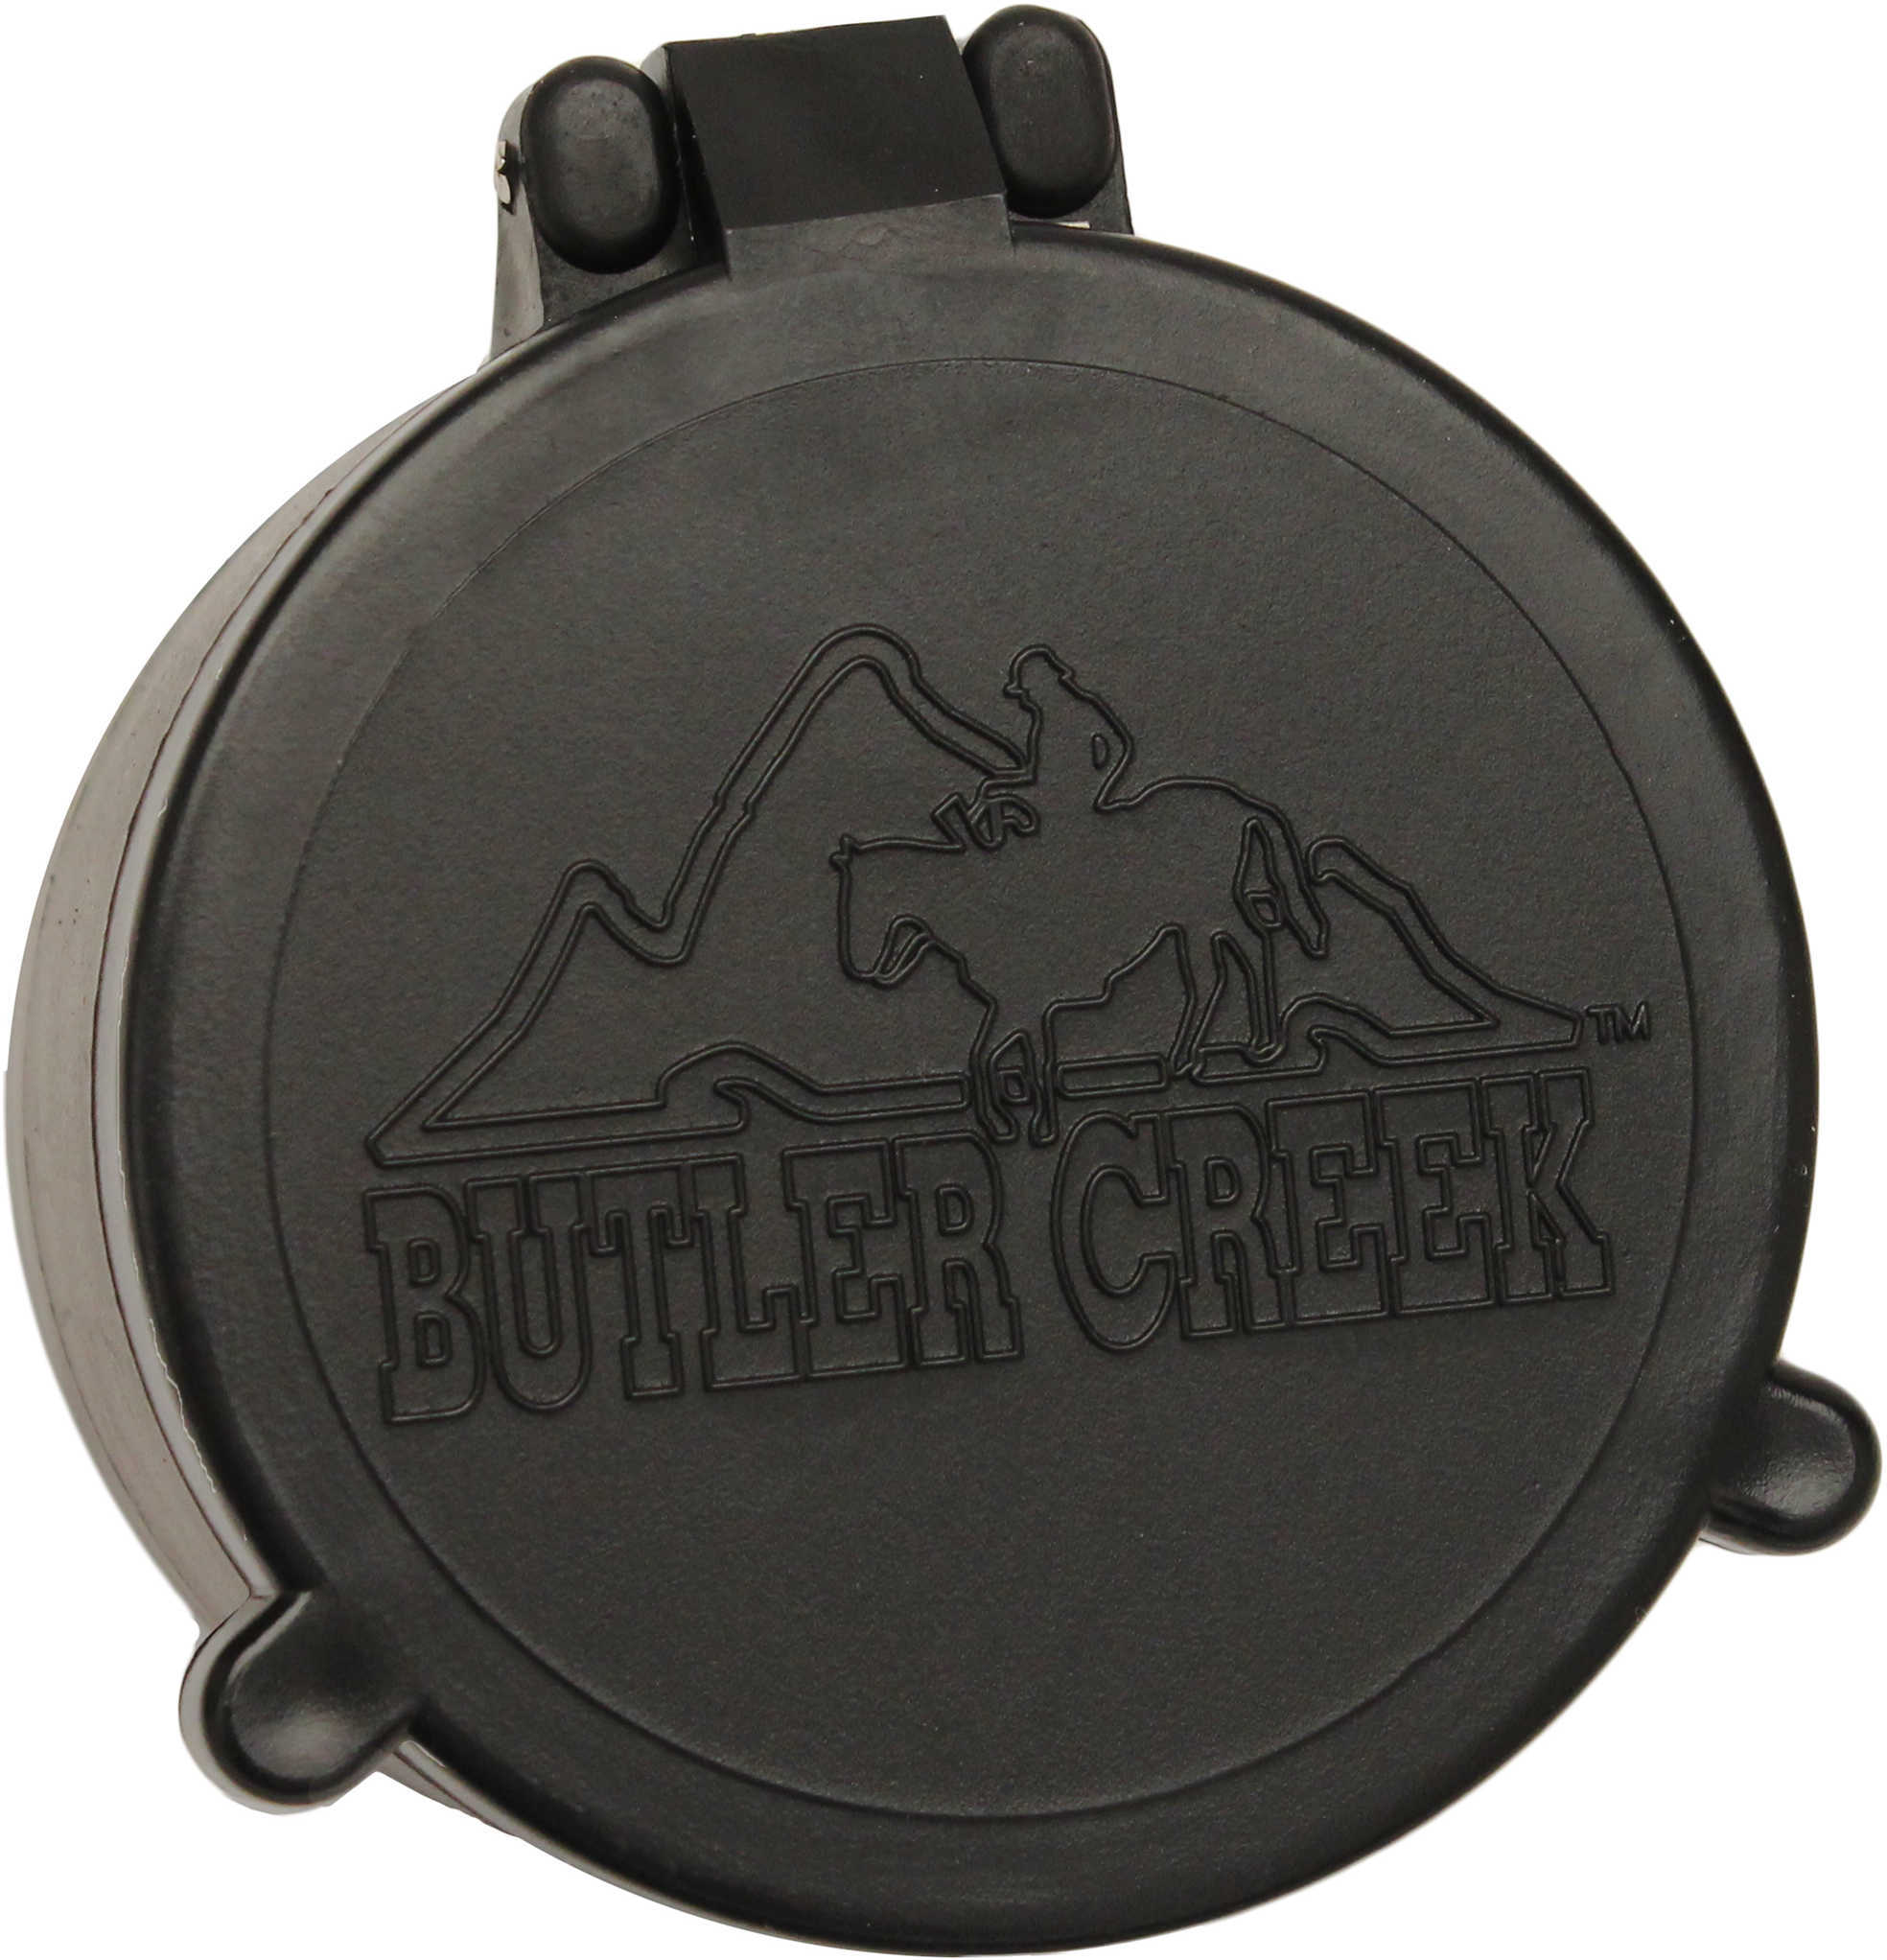 Butler Creek 30330 Flip-Open Scope Cover Objective Lens 51.90mm Slip On Polymer Black